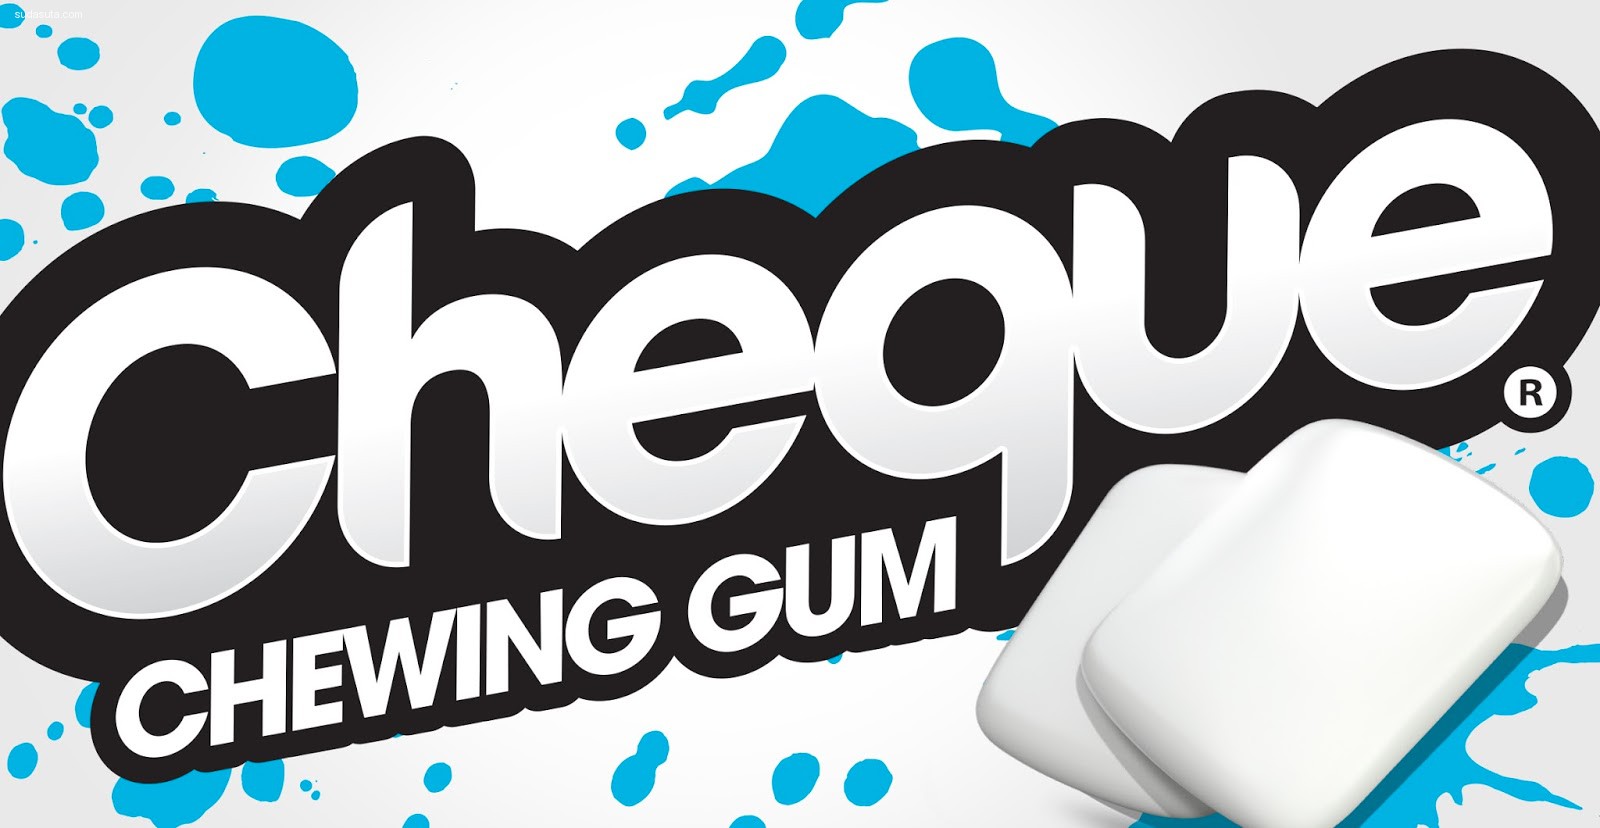 Cheque Gum (5)